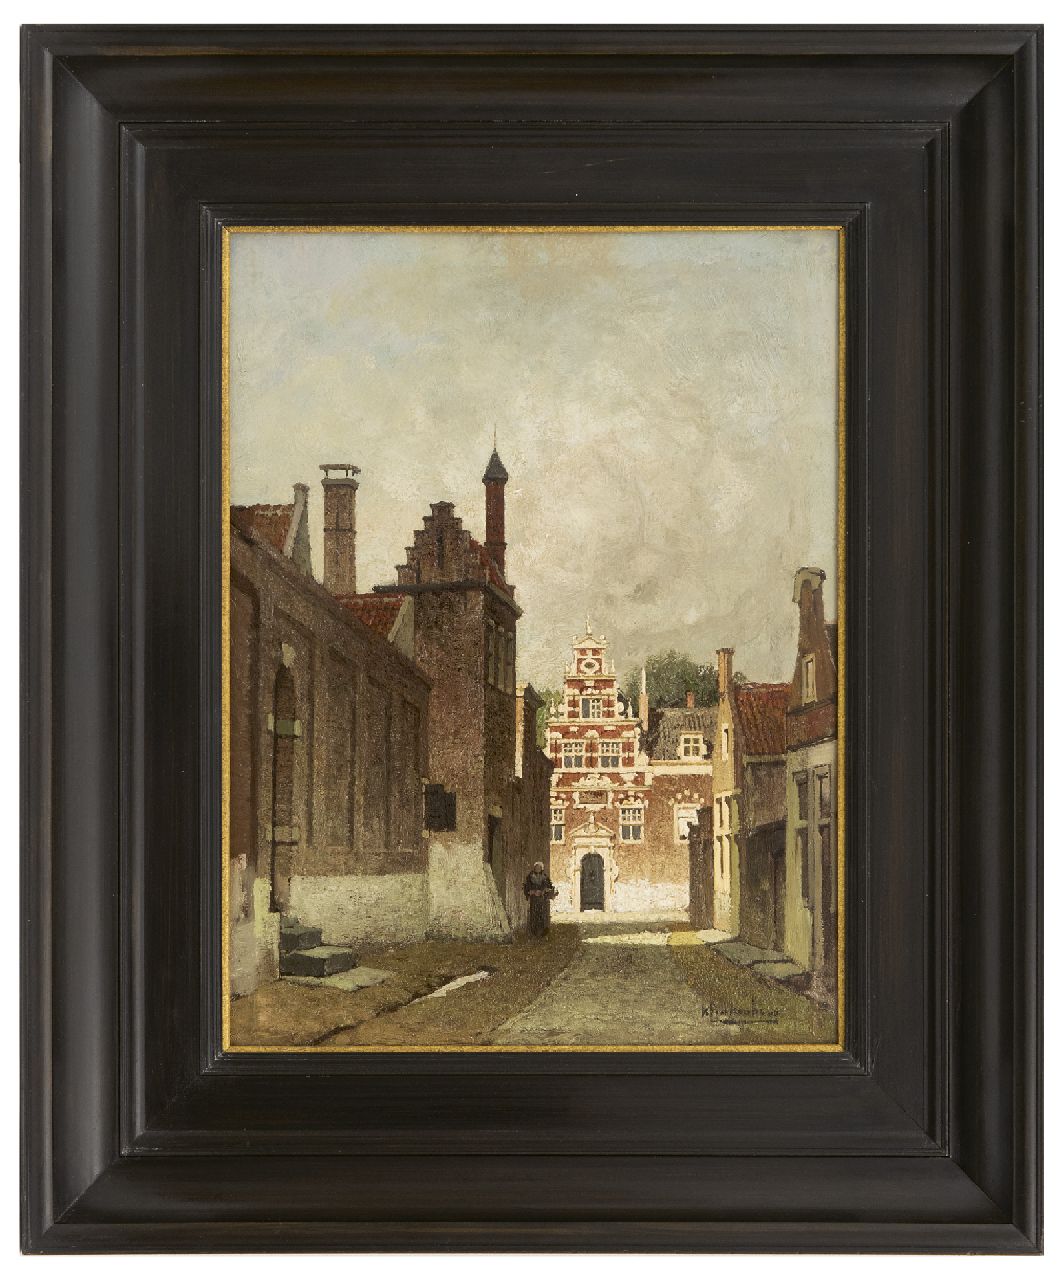 Klinkenberg J.C.K.  | Johannes Christiaan Karel Klinkenberg | Paintings offered for sale | A city view in summer (possibly Delft), oil on panel 33.0 x 24.7 cm, signed l.r.